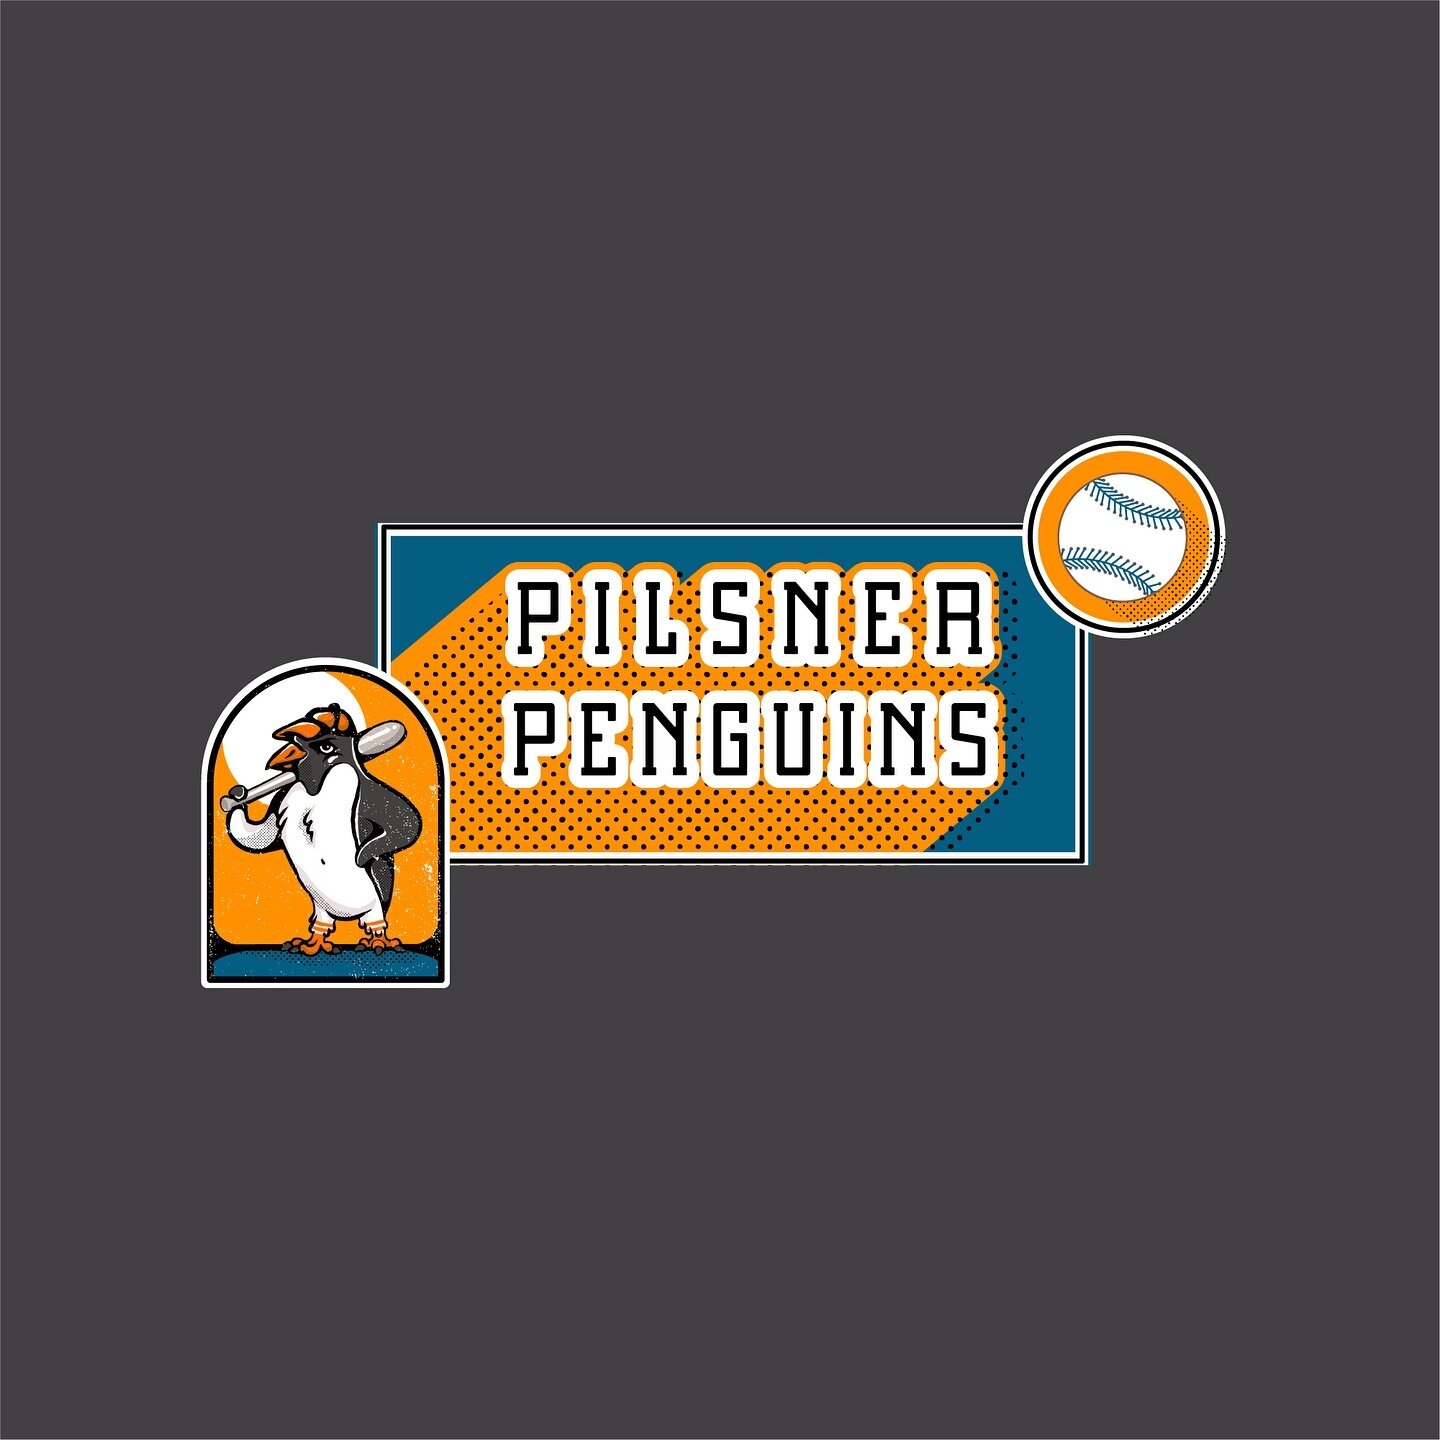 Pilsner penguins softball team logo .
.
.
#logodesinger #logo #branding #graphicdesign #design #procreate #illustrator #adobe #designboom #penguin #softball #sport #type #font #retro